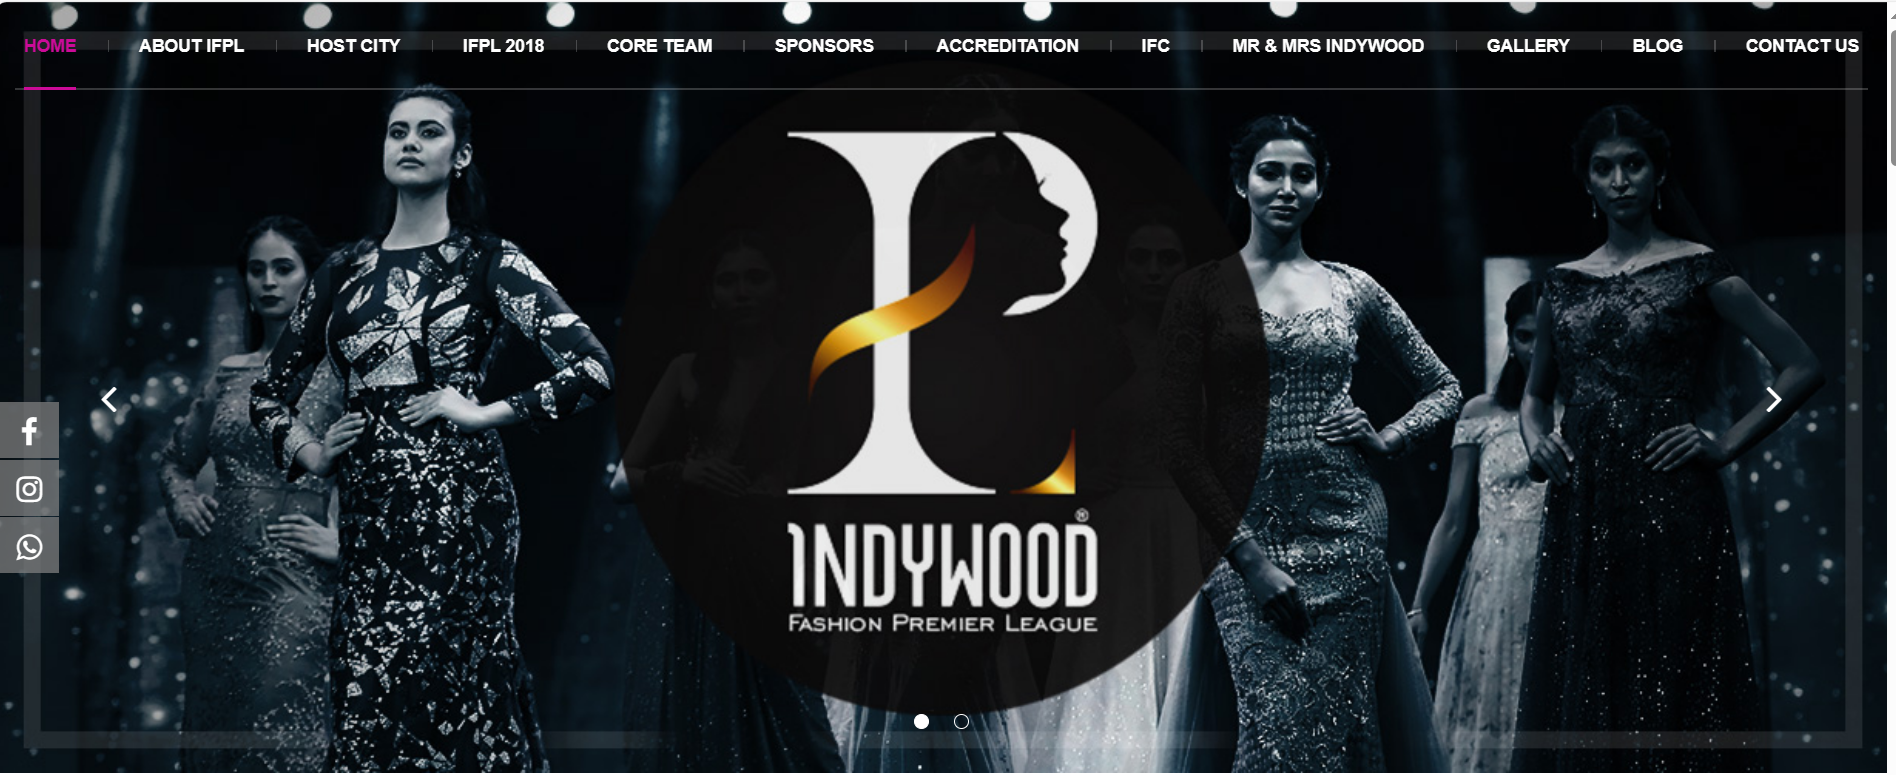 Indywood Fashion Premier League